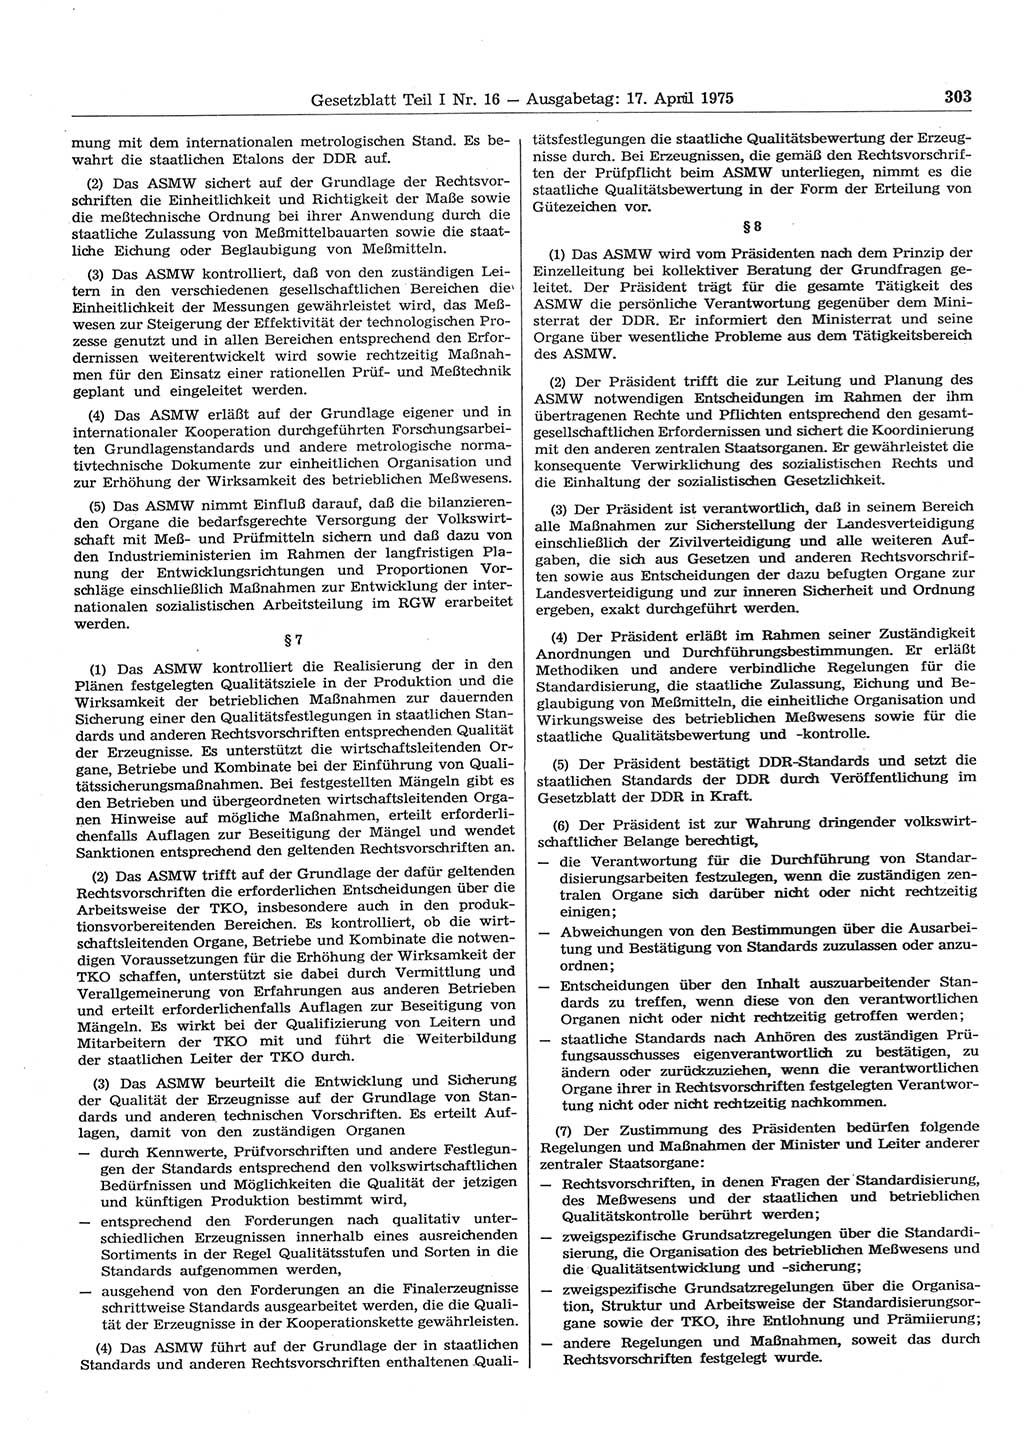 Gesetzblatt (GBl.) der Deutschen Demokratischen Republik (DDR) Teil Ⅰ 1975, Seite 303 (GBl. DDR Ⅰ 1975, S. 303)